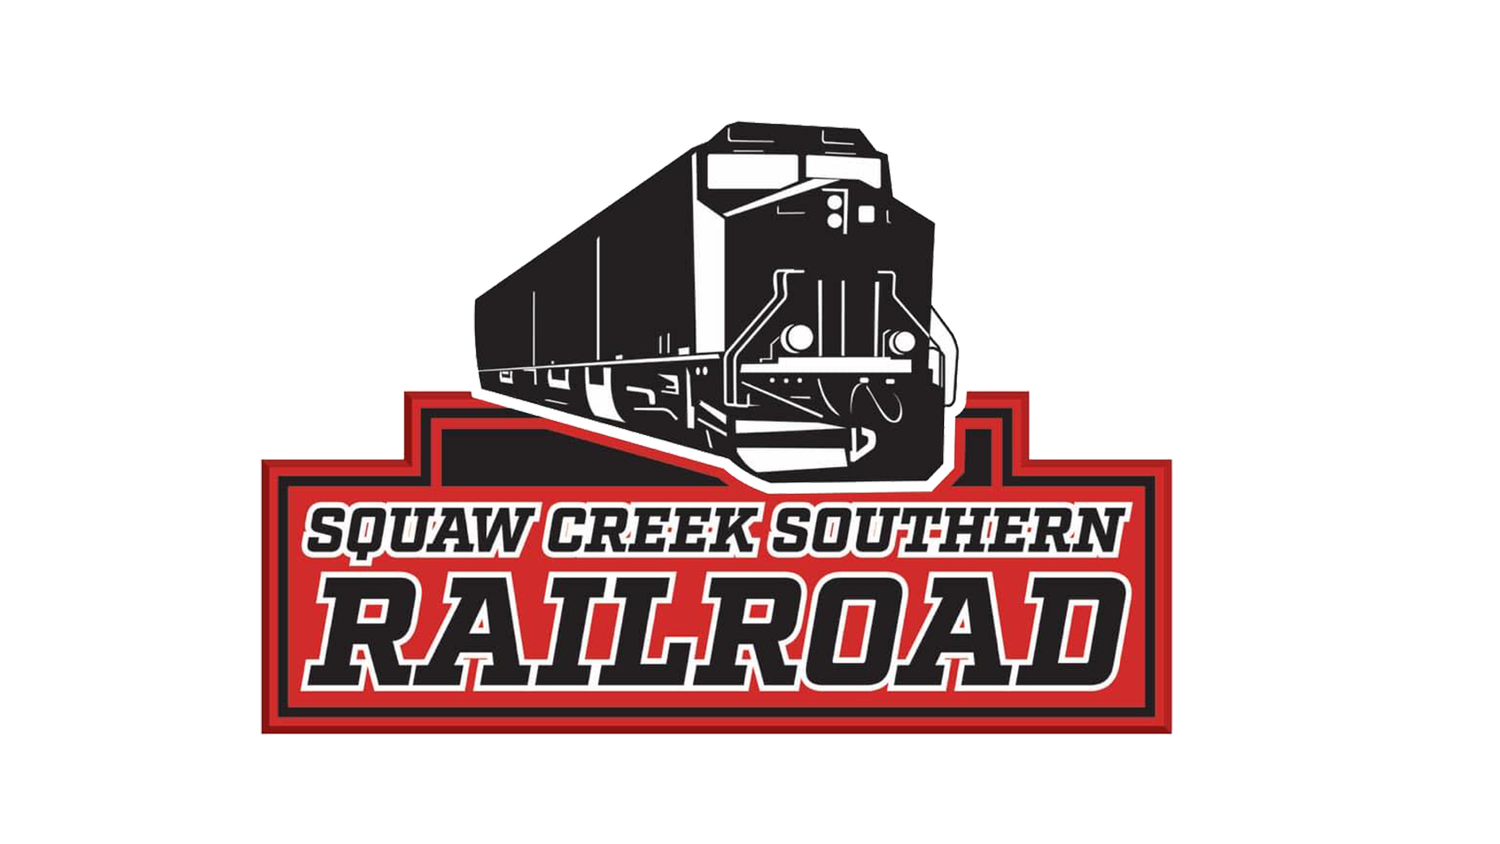 Squaw Creek Southern Railroad